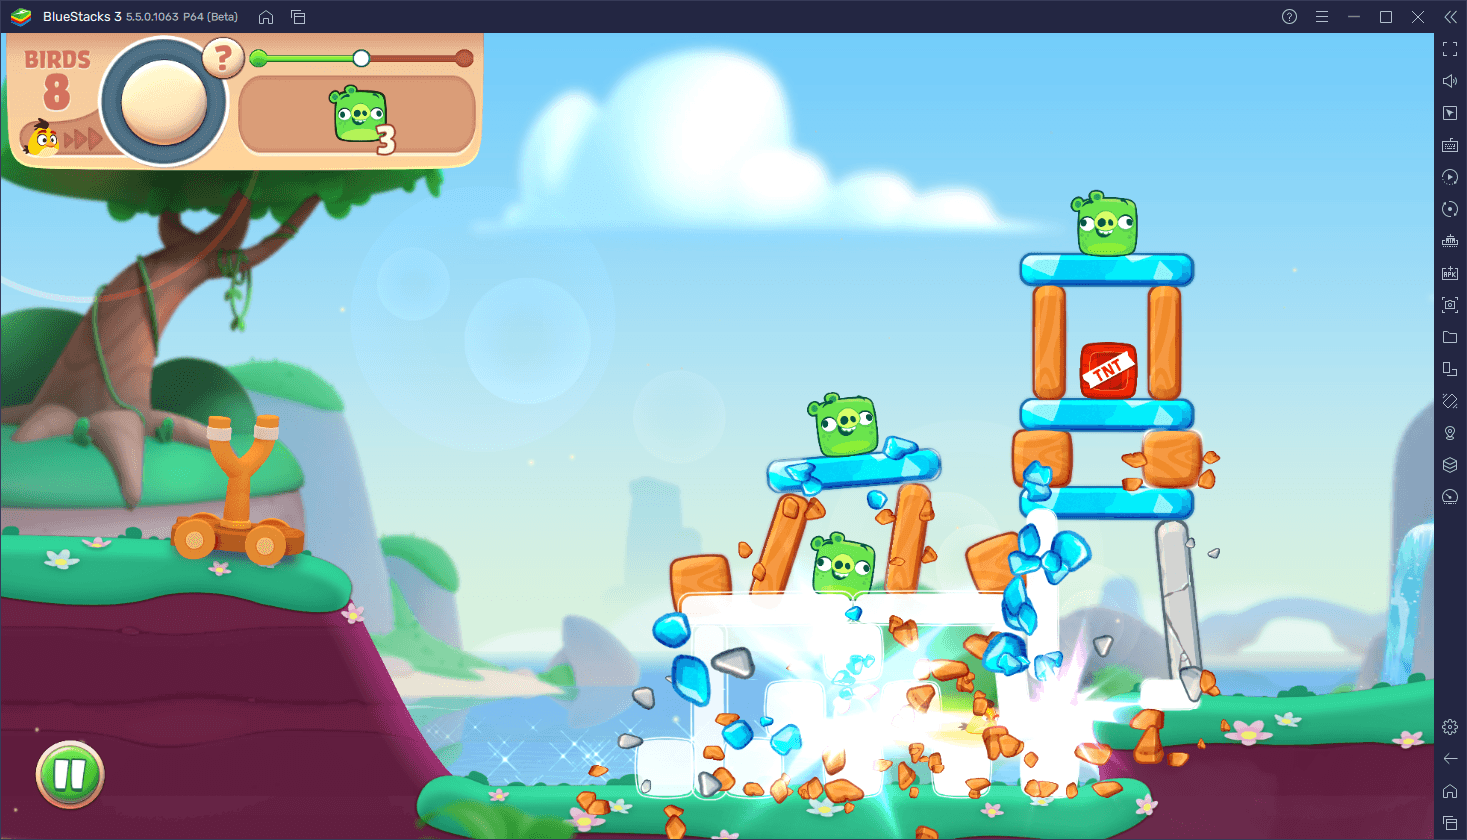 Comment Jouer à Angry Birds Journey sur PC avec BlueStacks